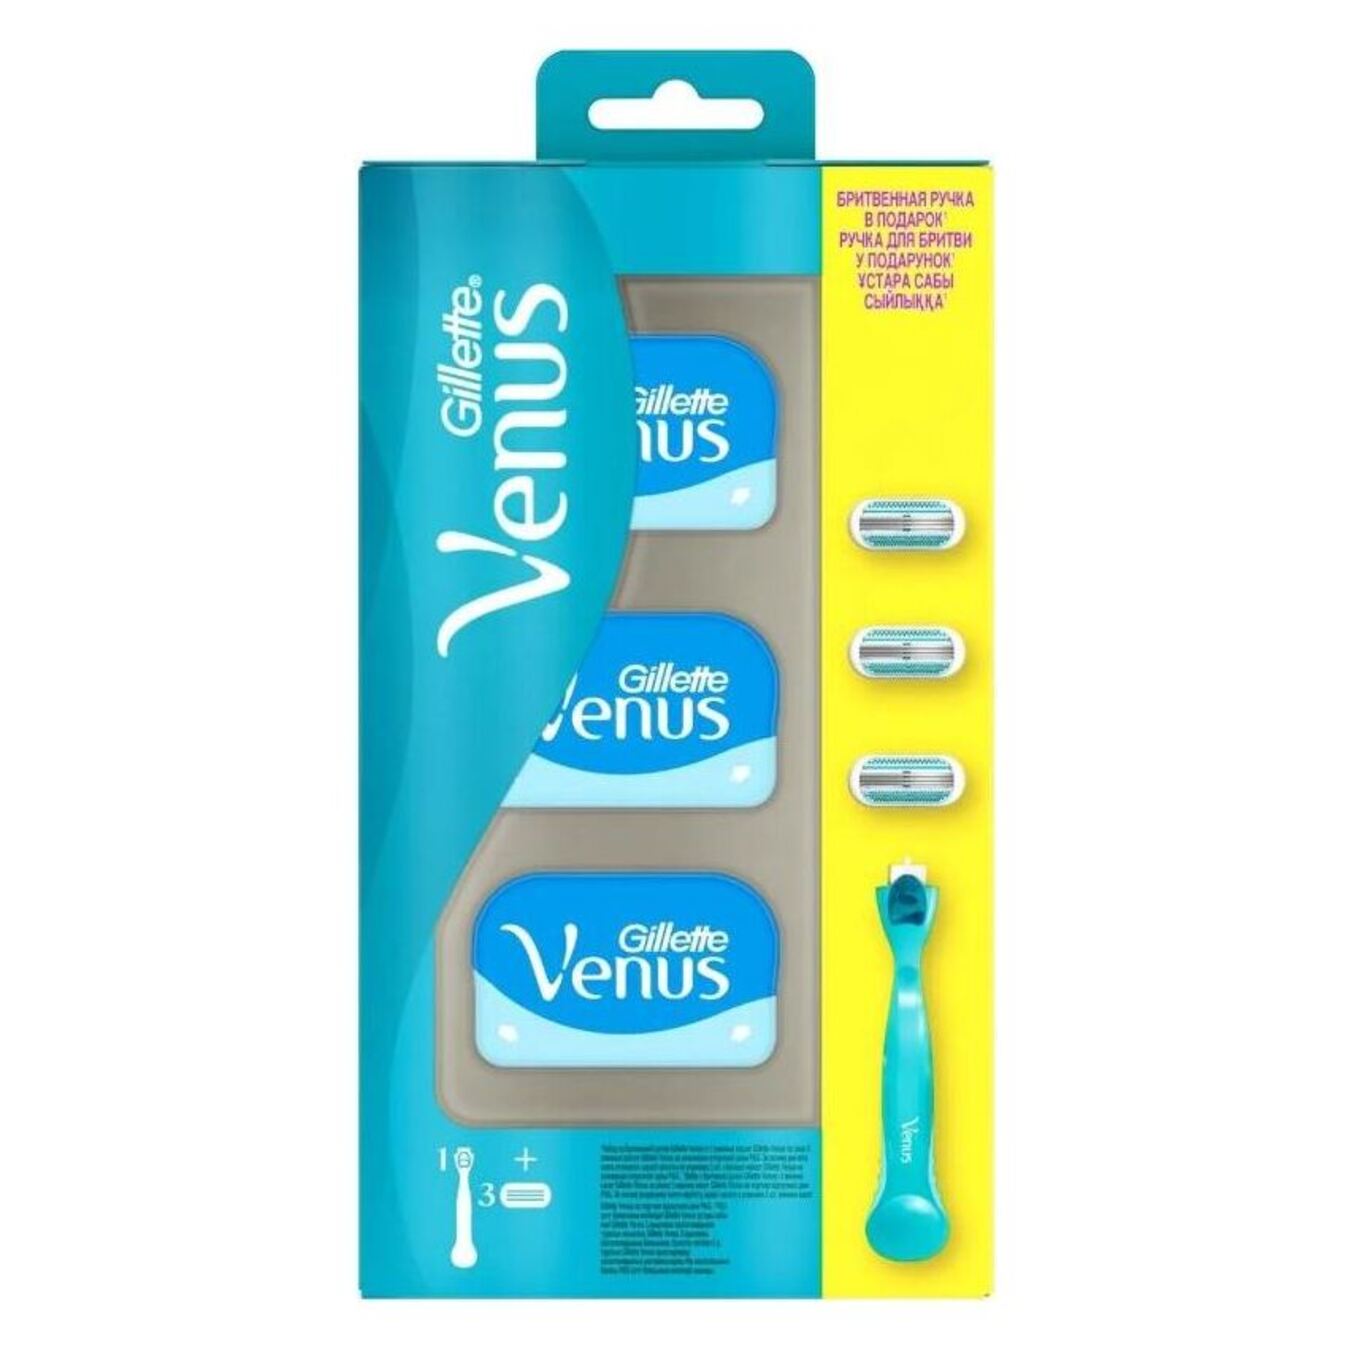 Gillette Venus razor with replaceable Gillette Venus cassettes for shaving 3 pcs